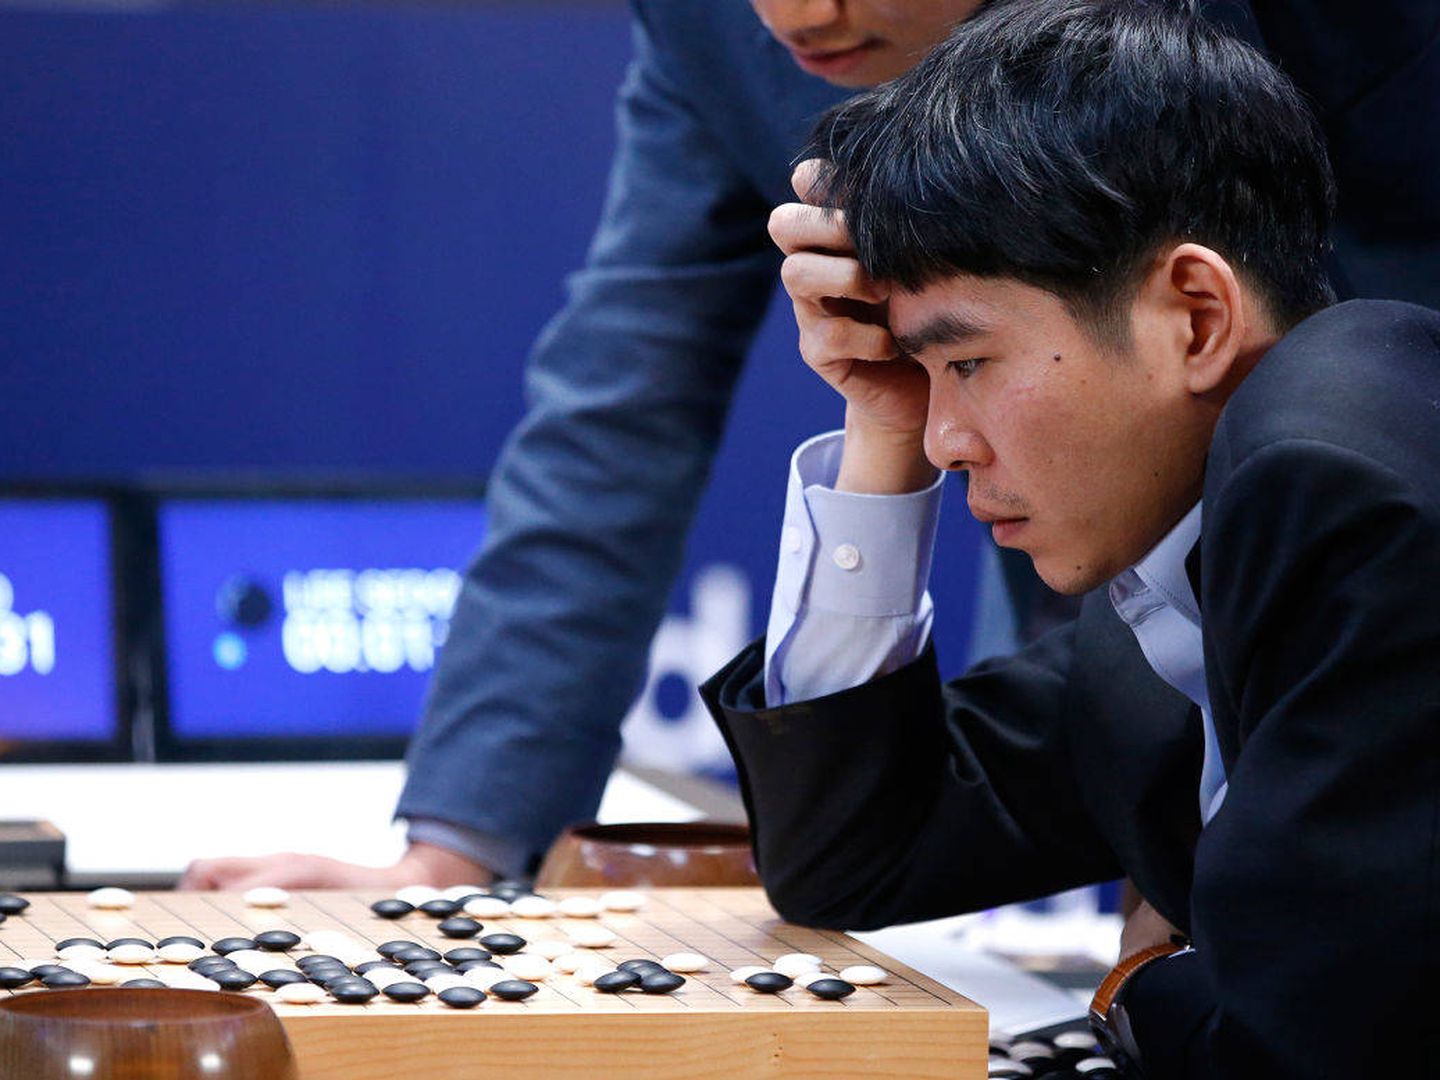 El campeón mundial de Go, Lee Sedol, durante una de sus partidas contra AlphaGo. 